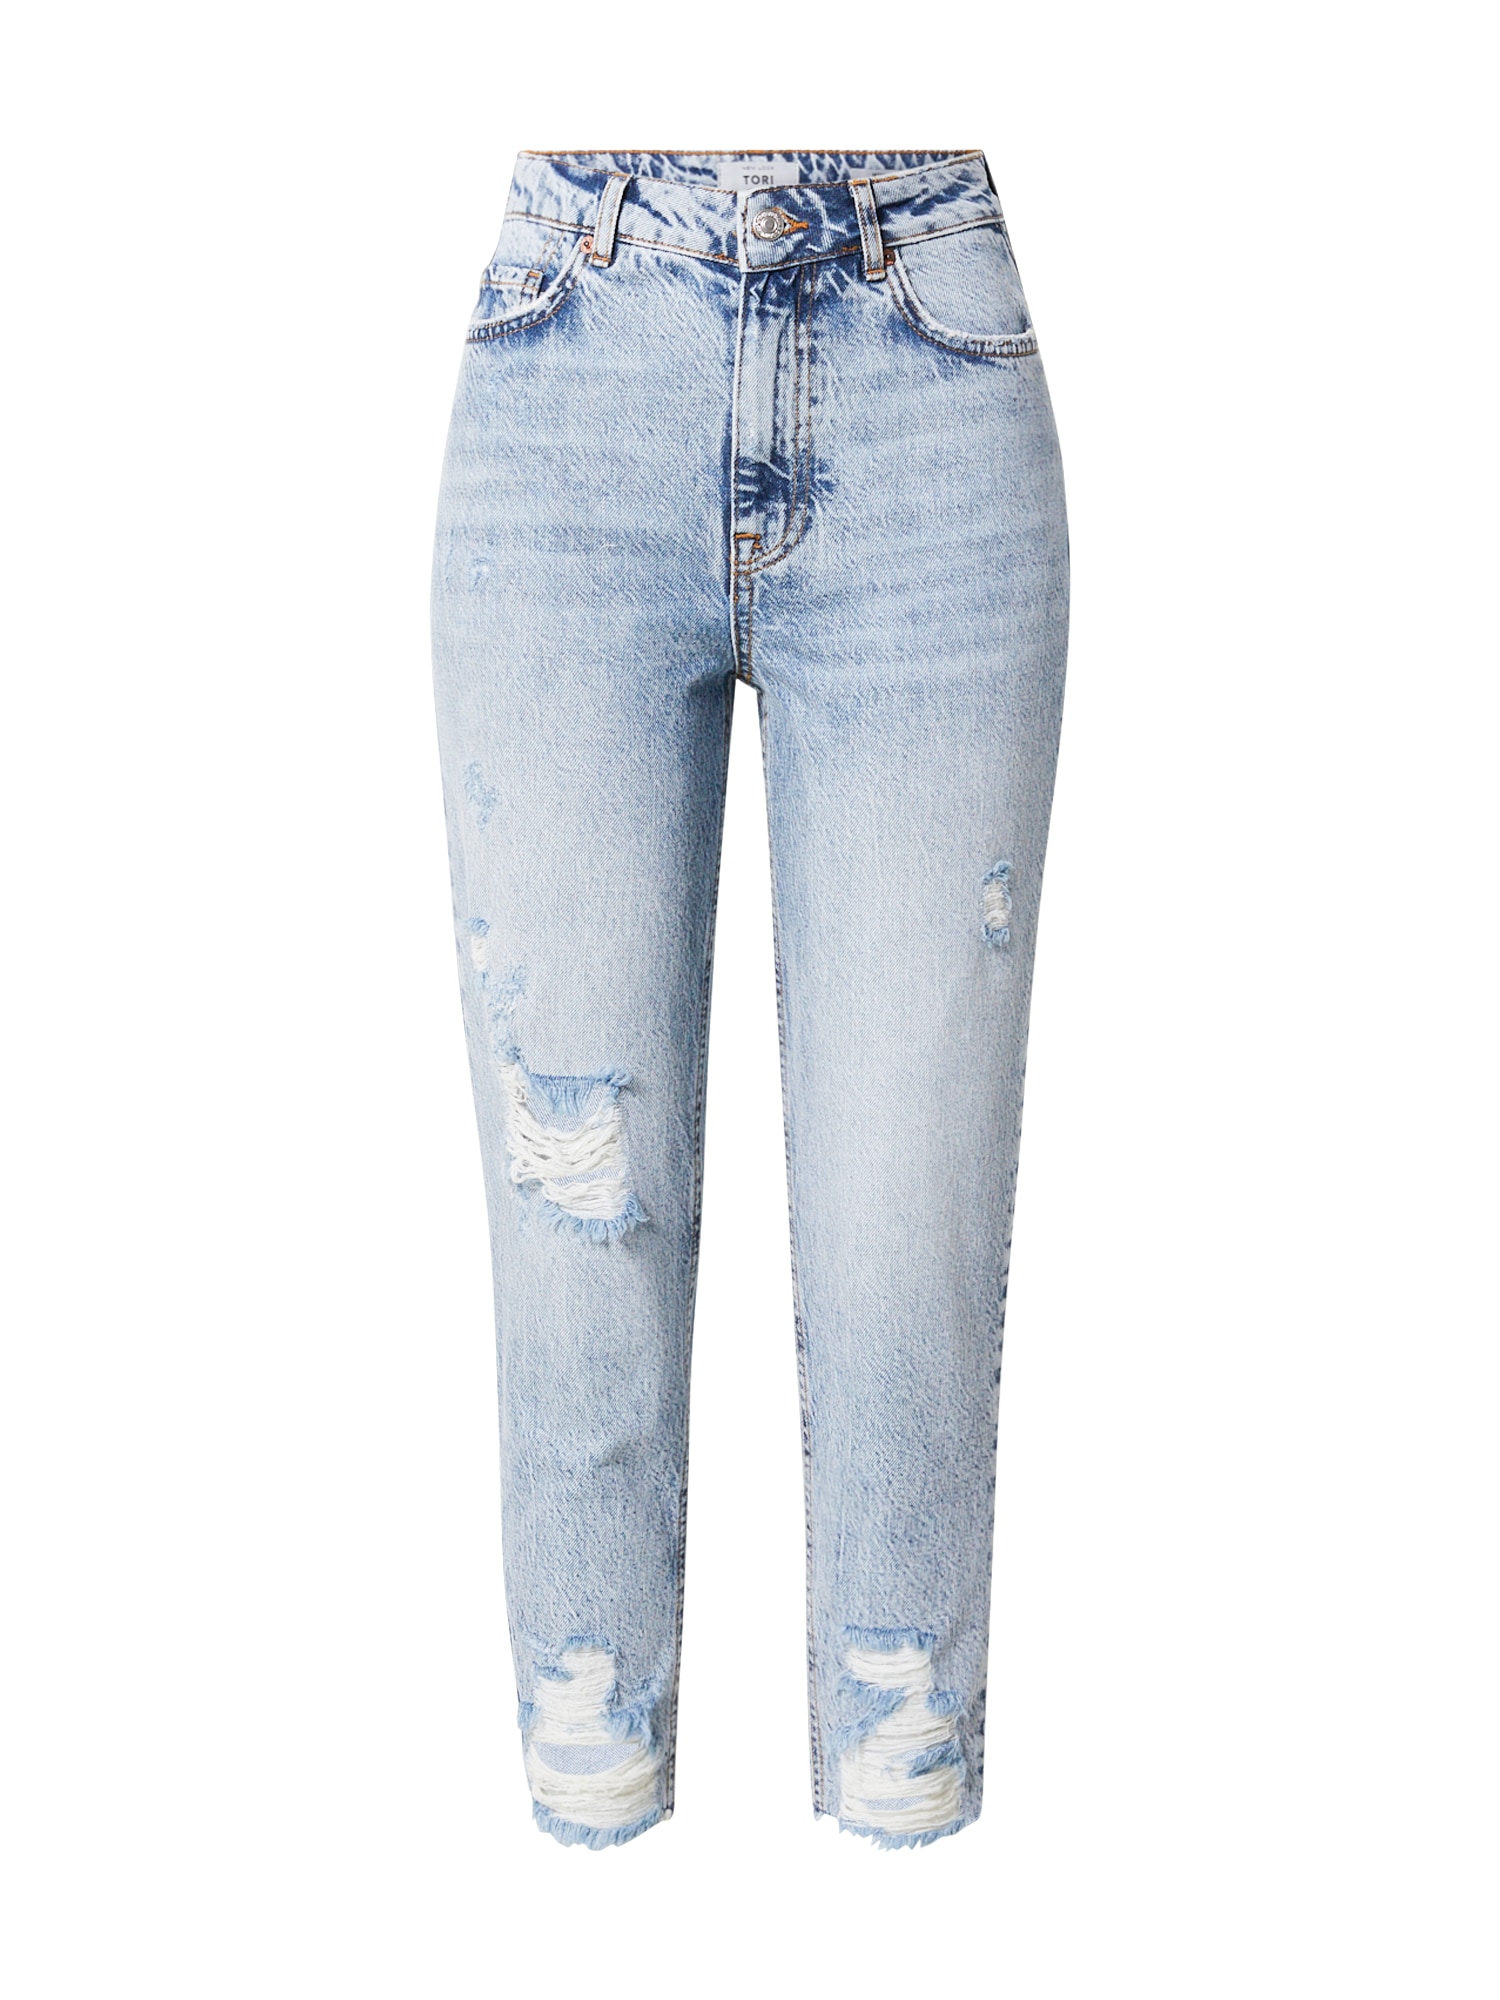 Jeans 'ARAGORN' von New Look